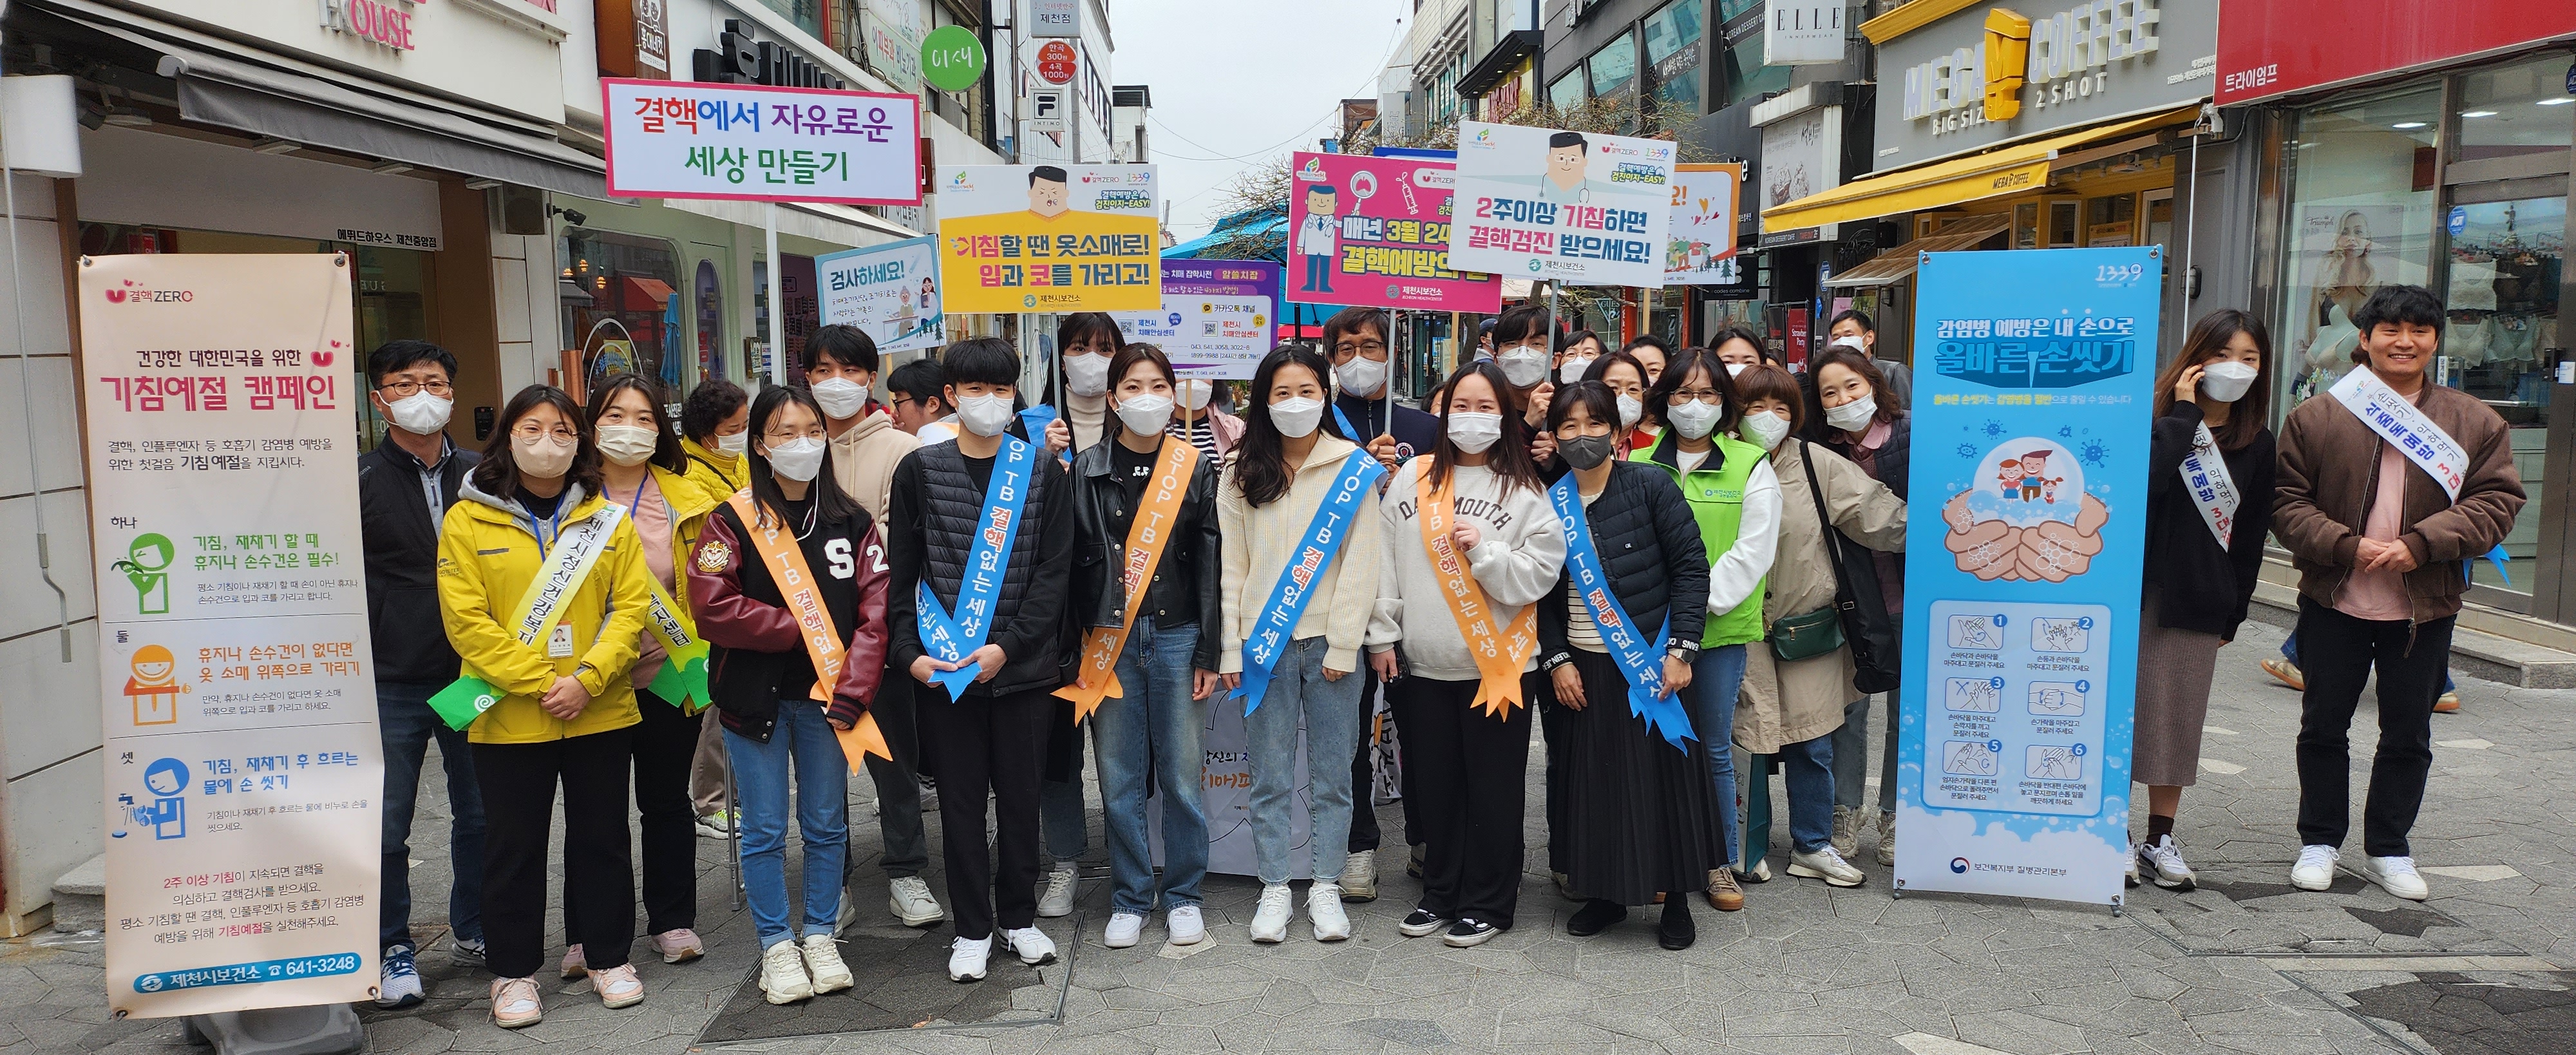 제14회 결핵 예방의날(3. 24.) 기념 캠페인 실시 이미지 1